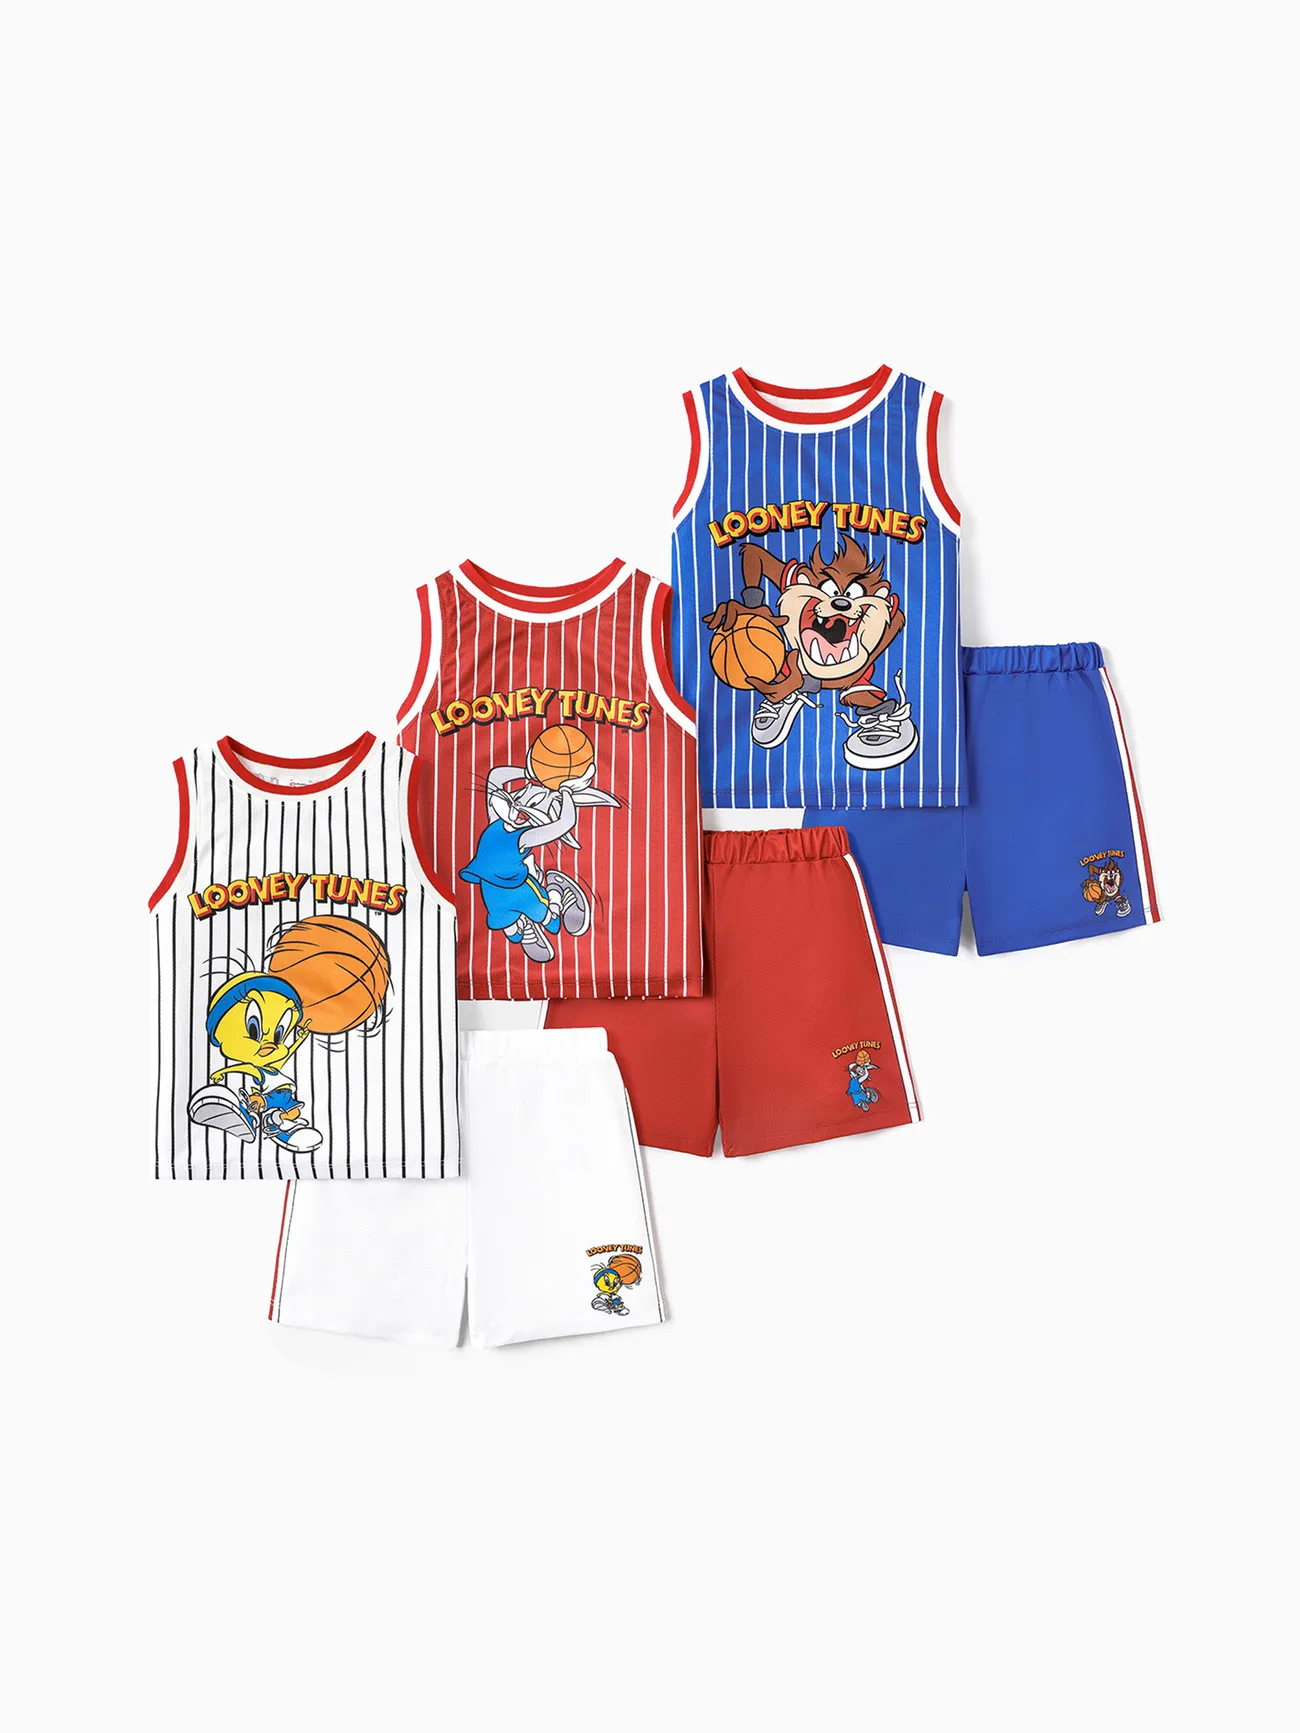 Looney Tunes Toddler/Kid Boy 2pcs Basketball & Character Print Tank Top and Shorts Set Blue big image 1